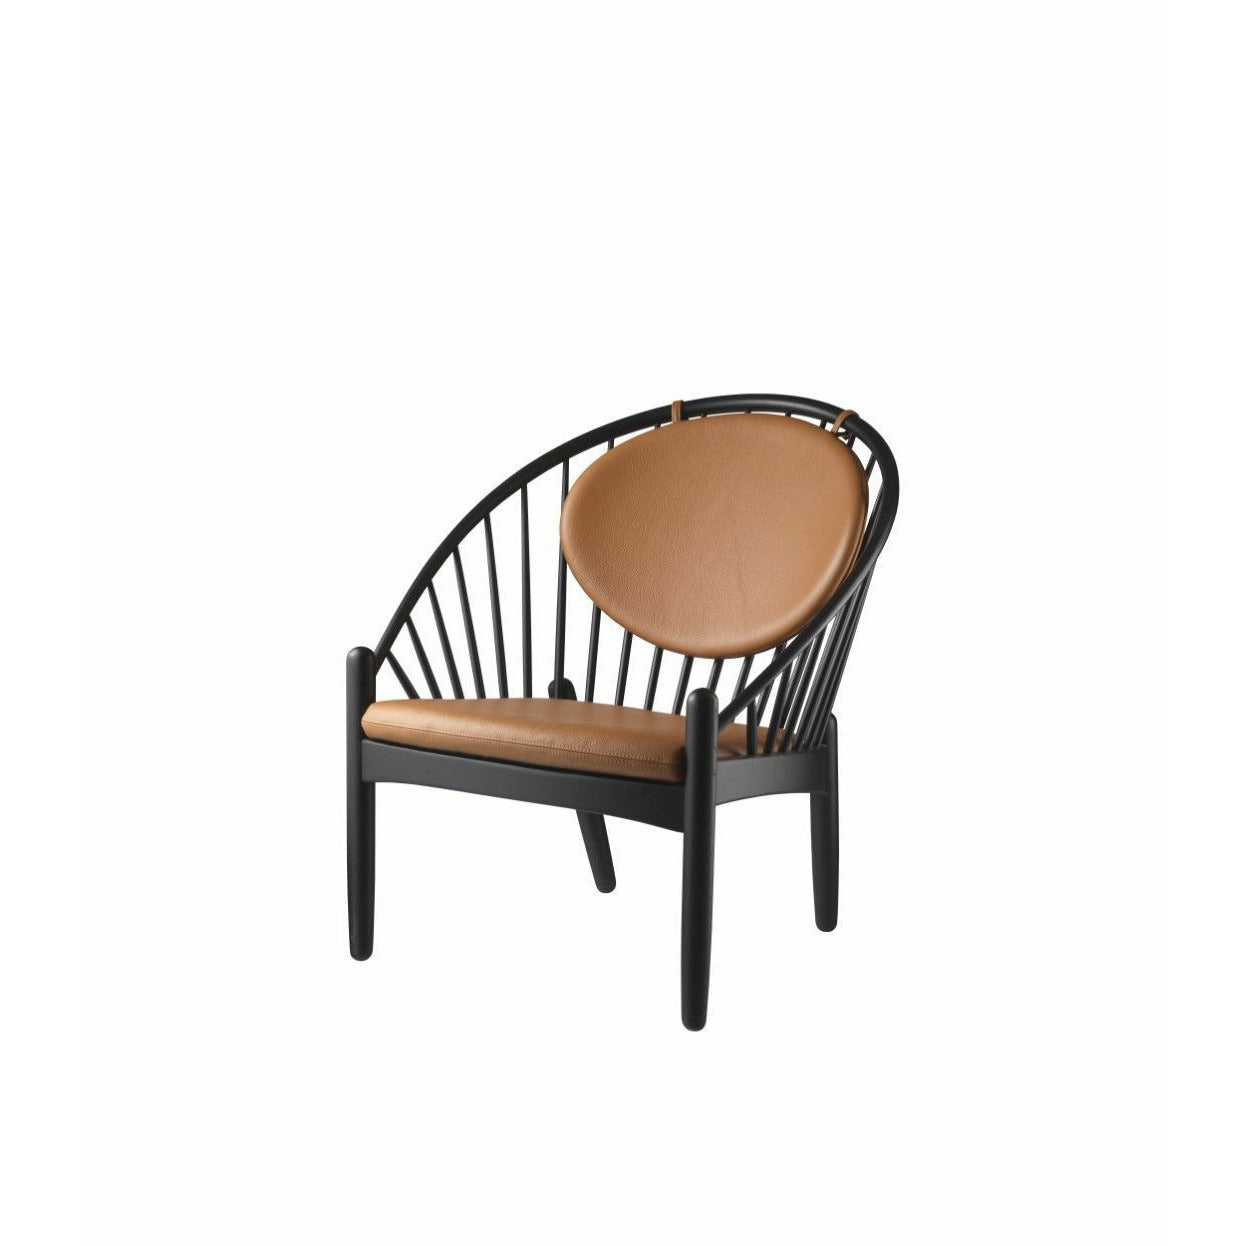 Fdb Møbler J166 Jørna Chair, Black/Cognac